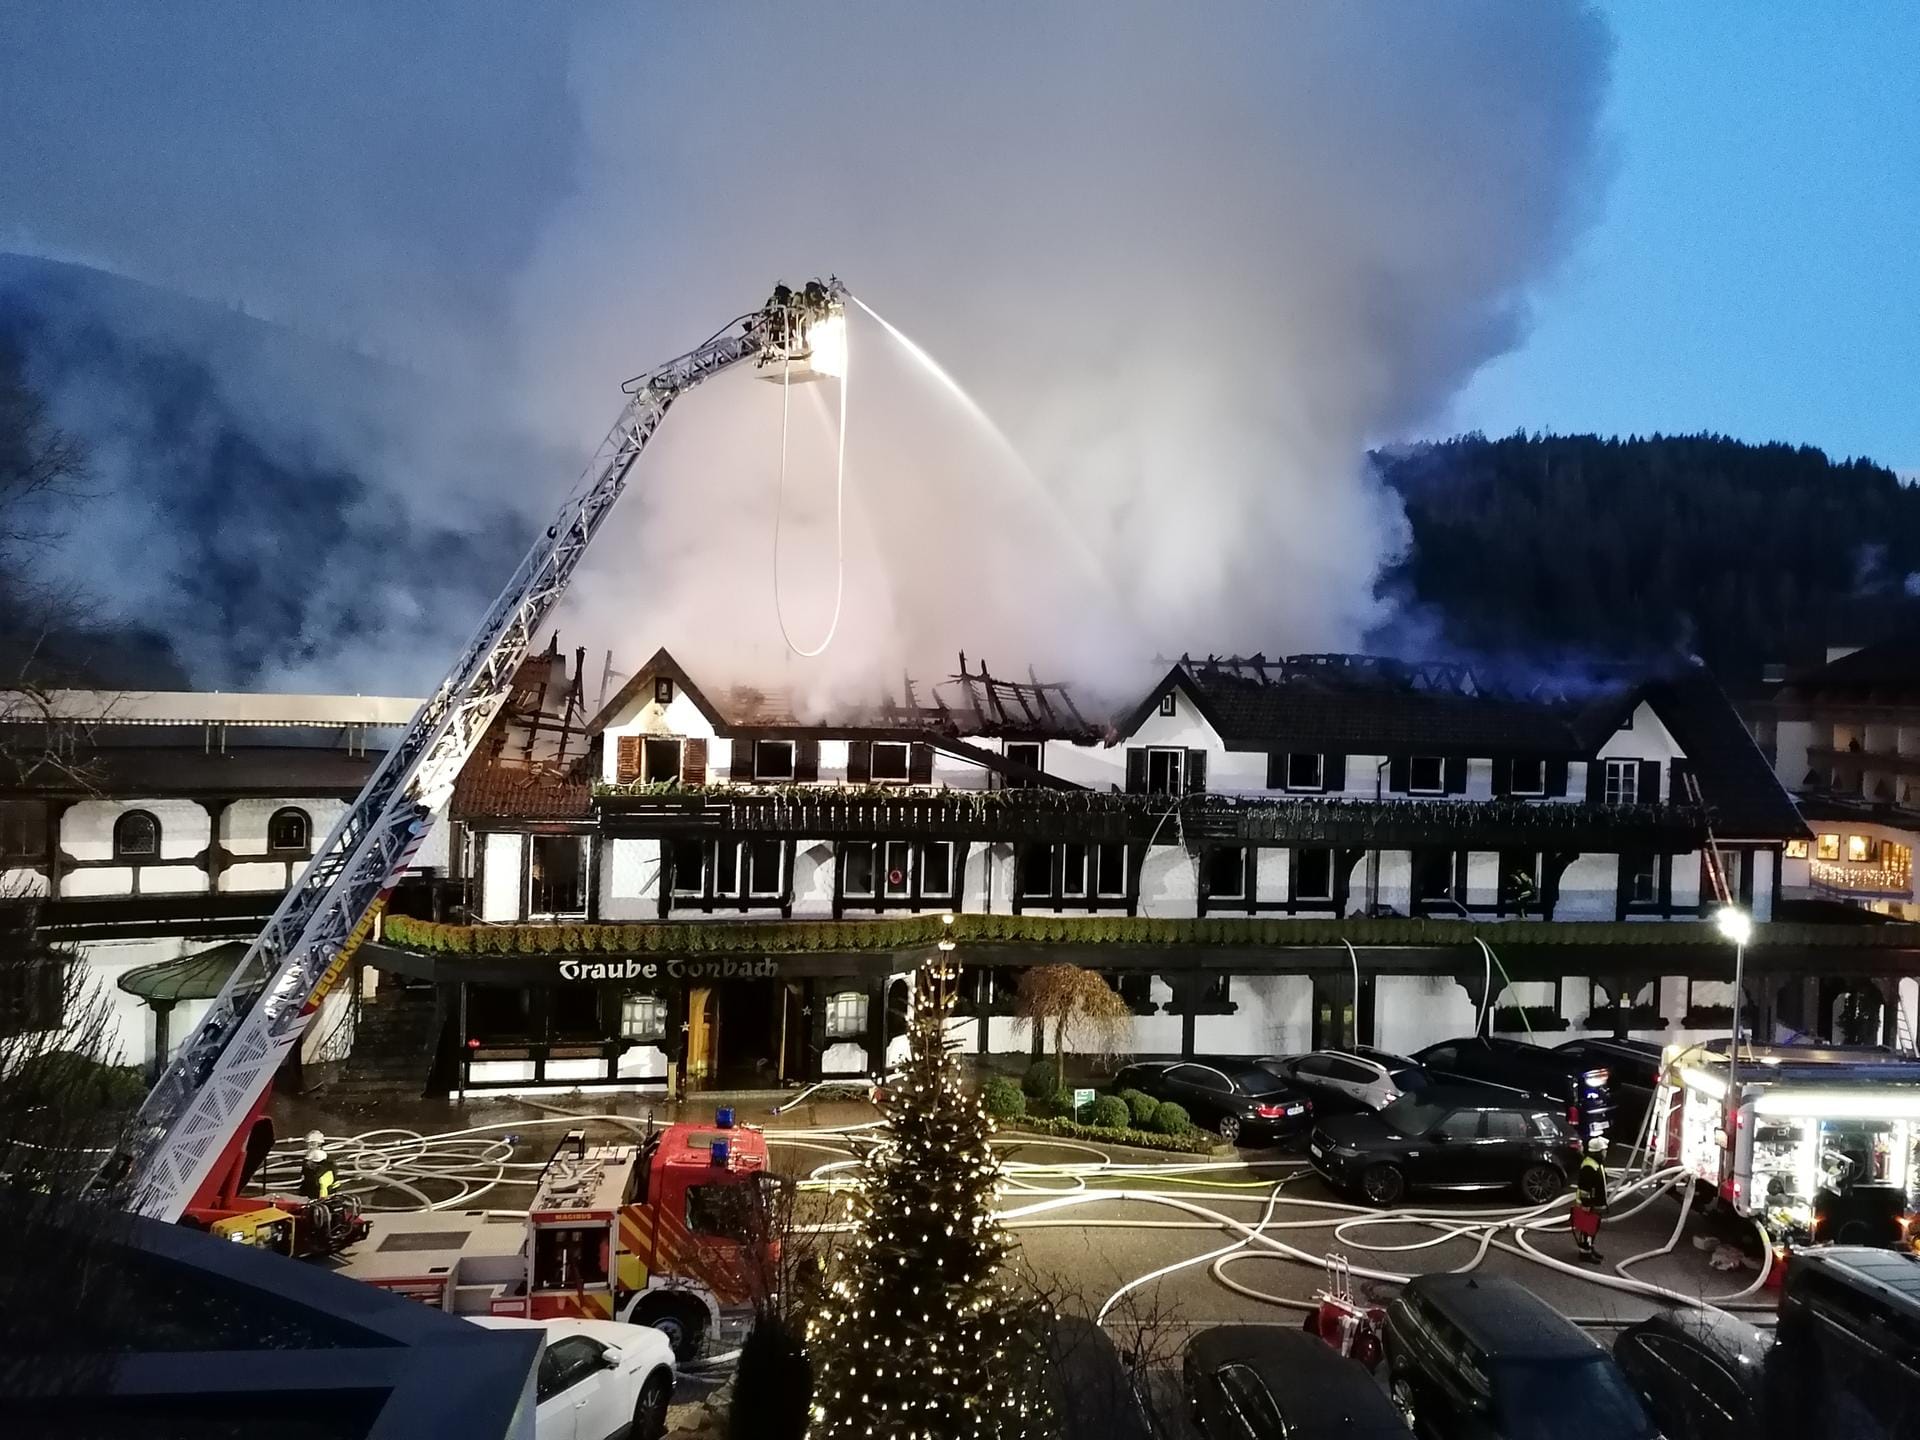 Brand in Drei-Sterne-Restaurant im Schwarzwald: Die "Schwarzwaldstube" im Hotel "Traube Tonbach" brennt vermutlich komplett nieder.